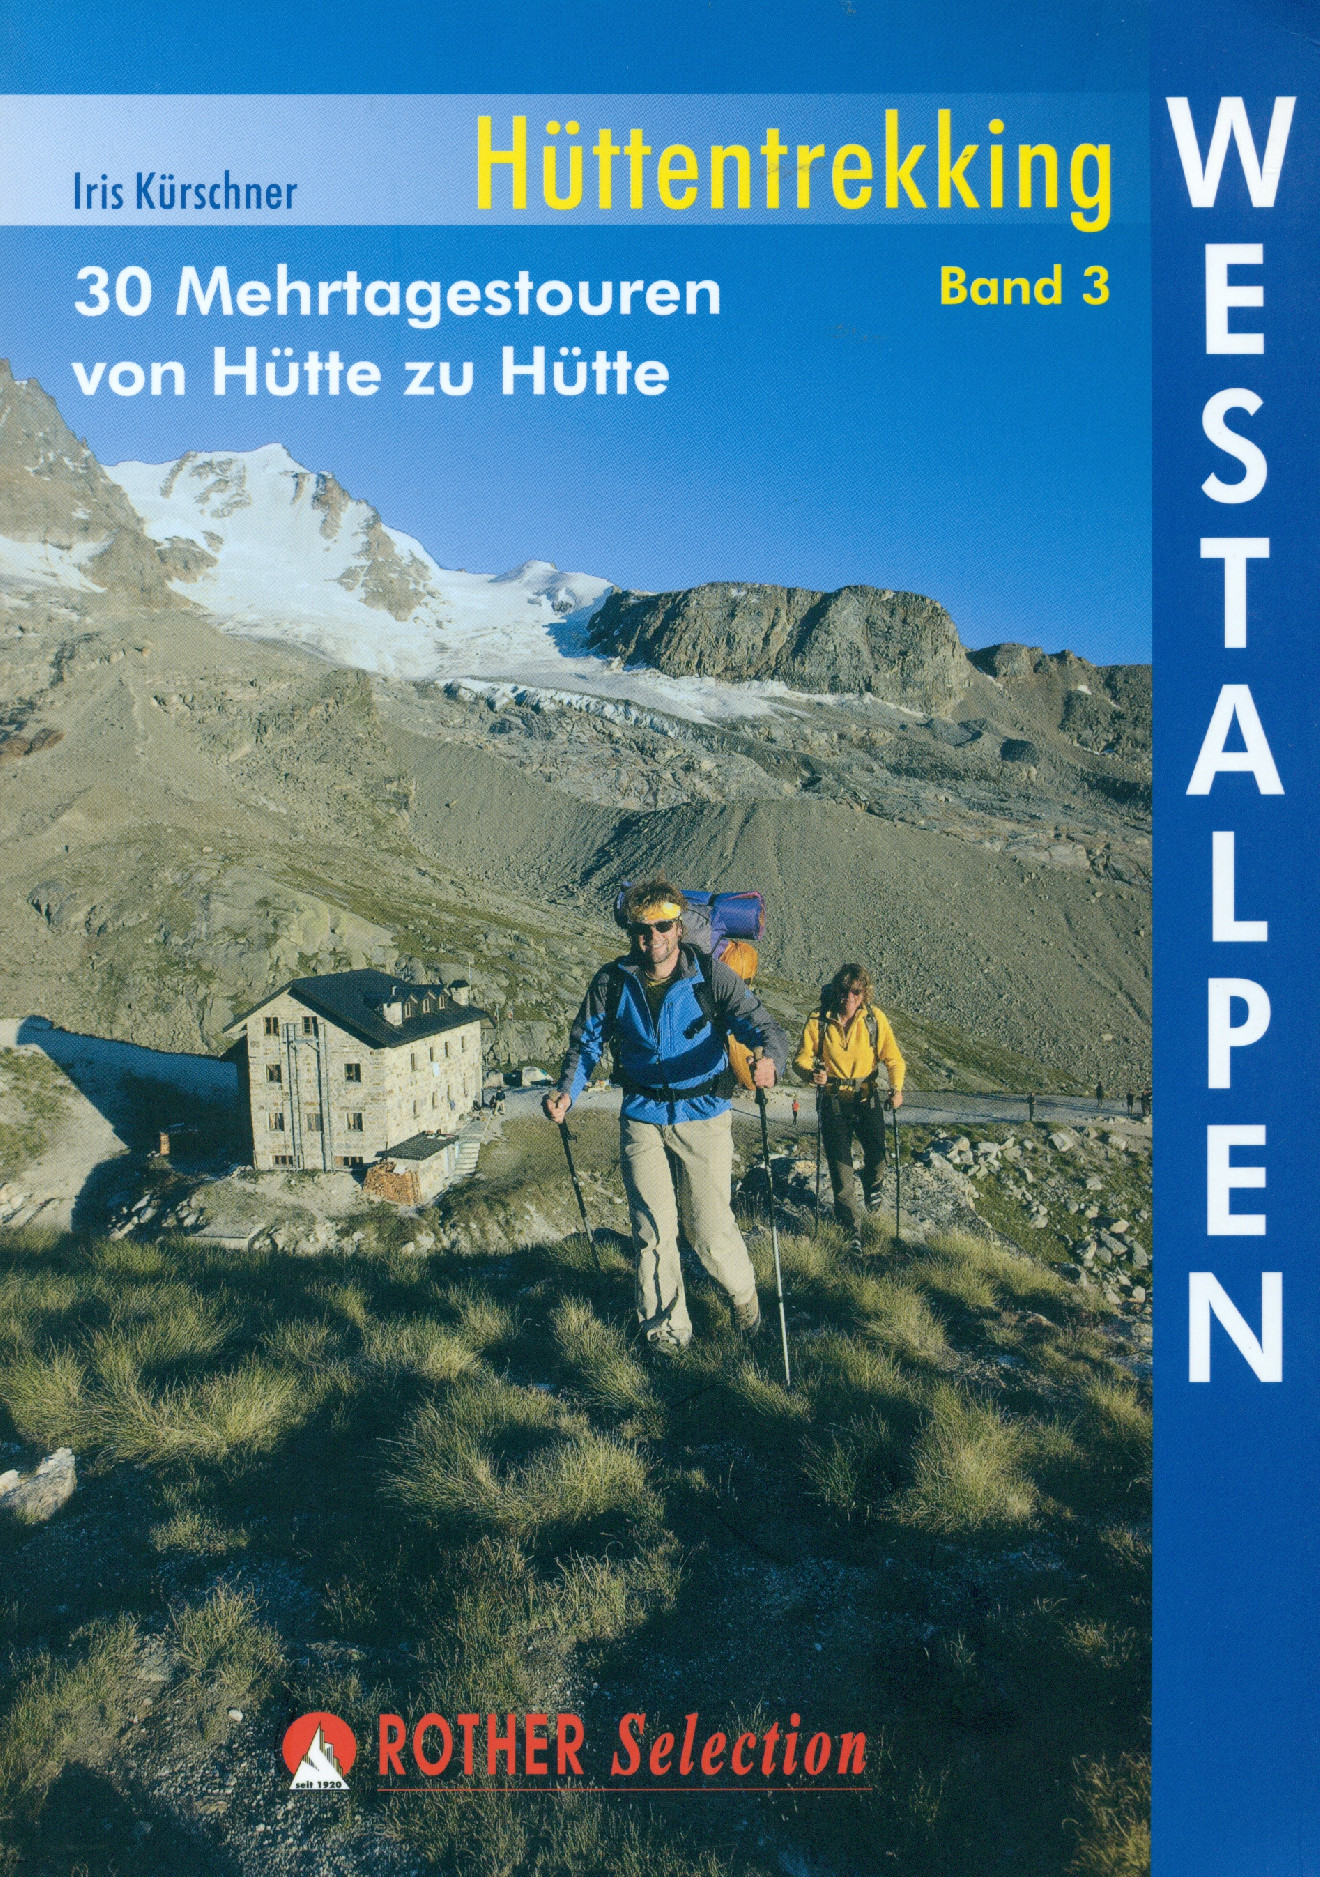 Rother Hüttentrekking Westalpen band 3, 1. vydání německy